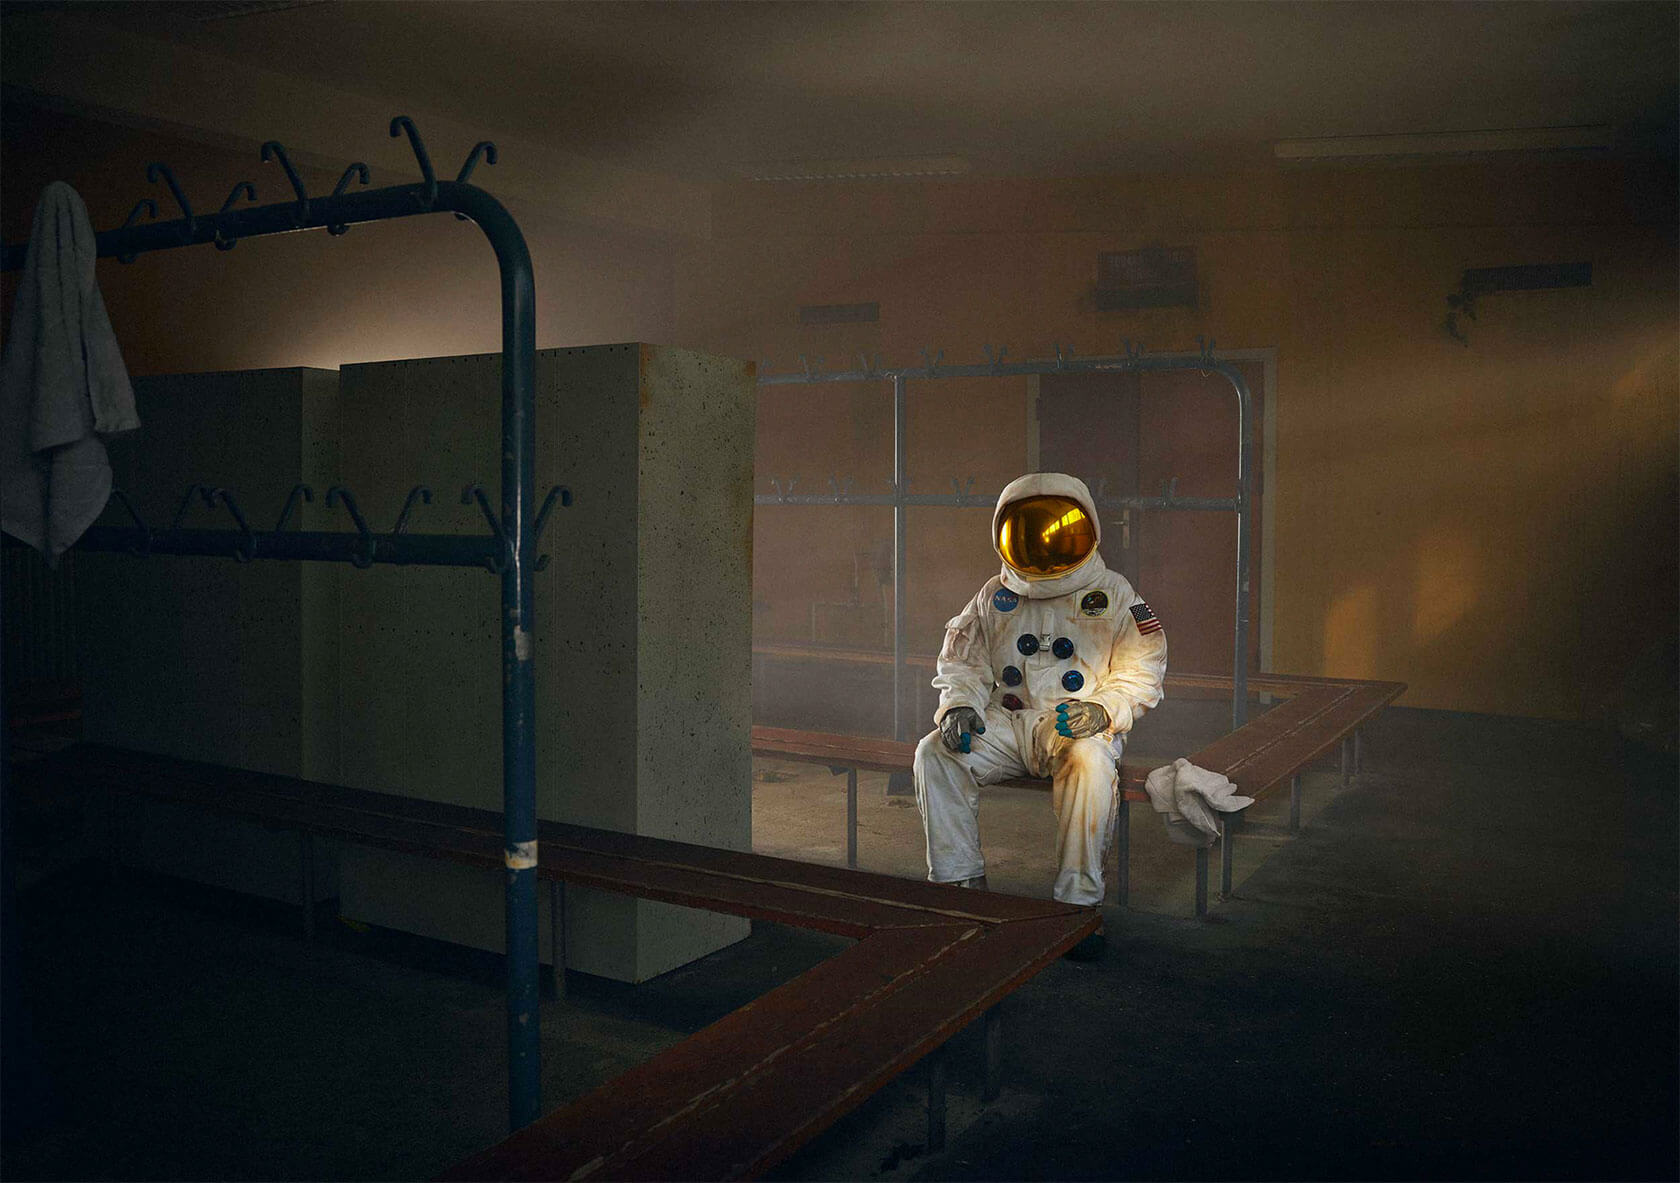 坠毁着陆:摄影师肯·赫尔曼拍摄的宇航员照片